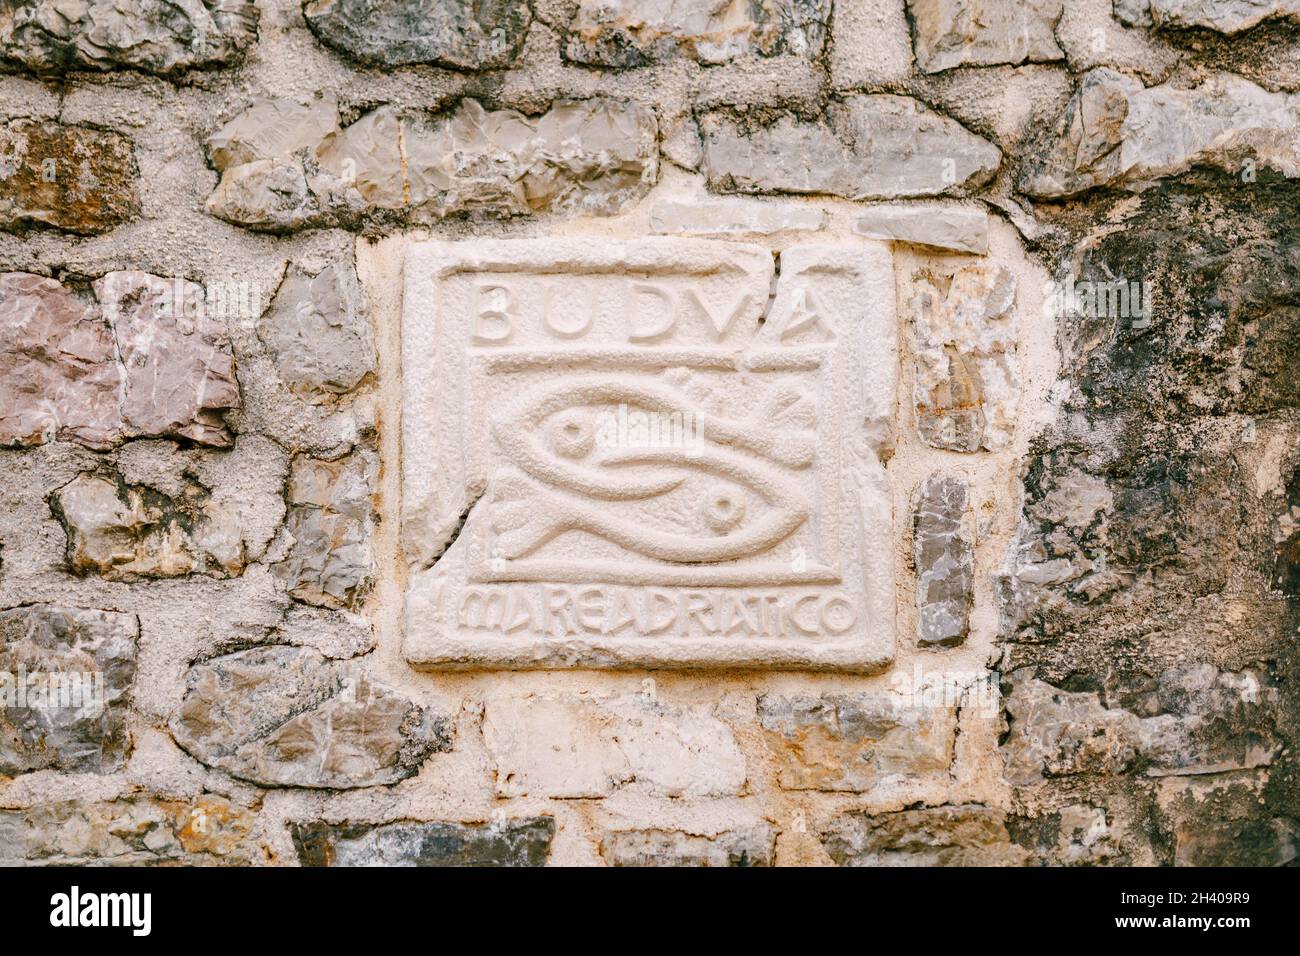 Un vieux mur en pierre avec un bas-relief appliqué avec l'inscription BUDVA mare adriatico et deux poissons. Banque D'Images